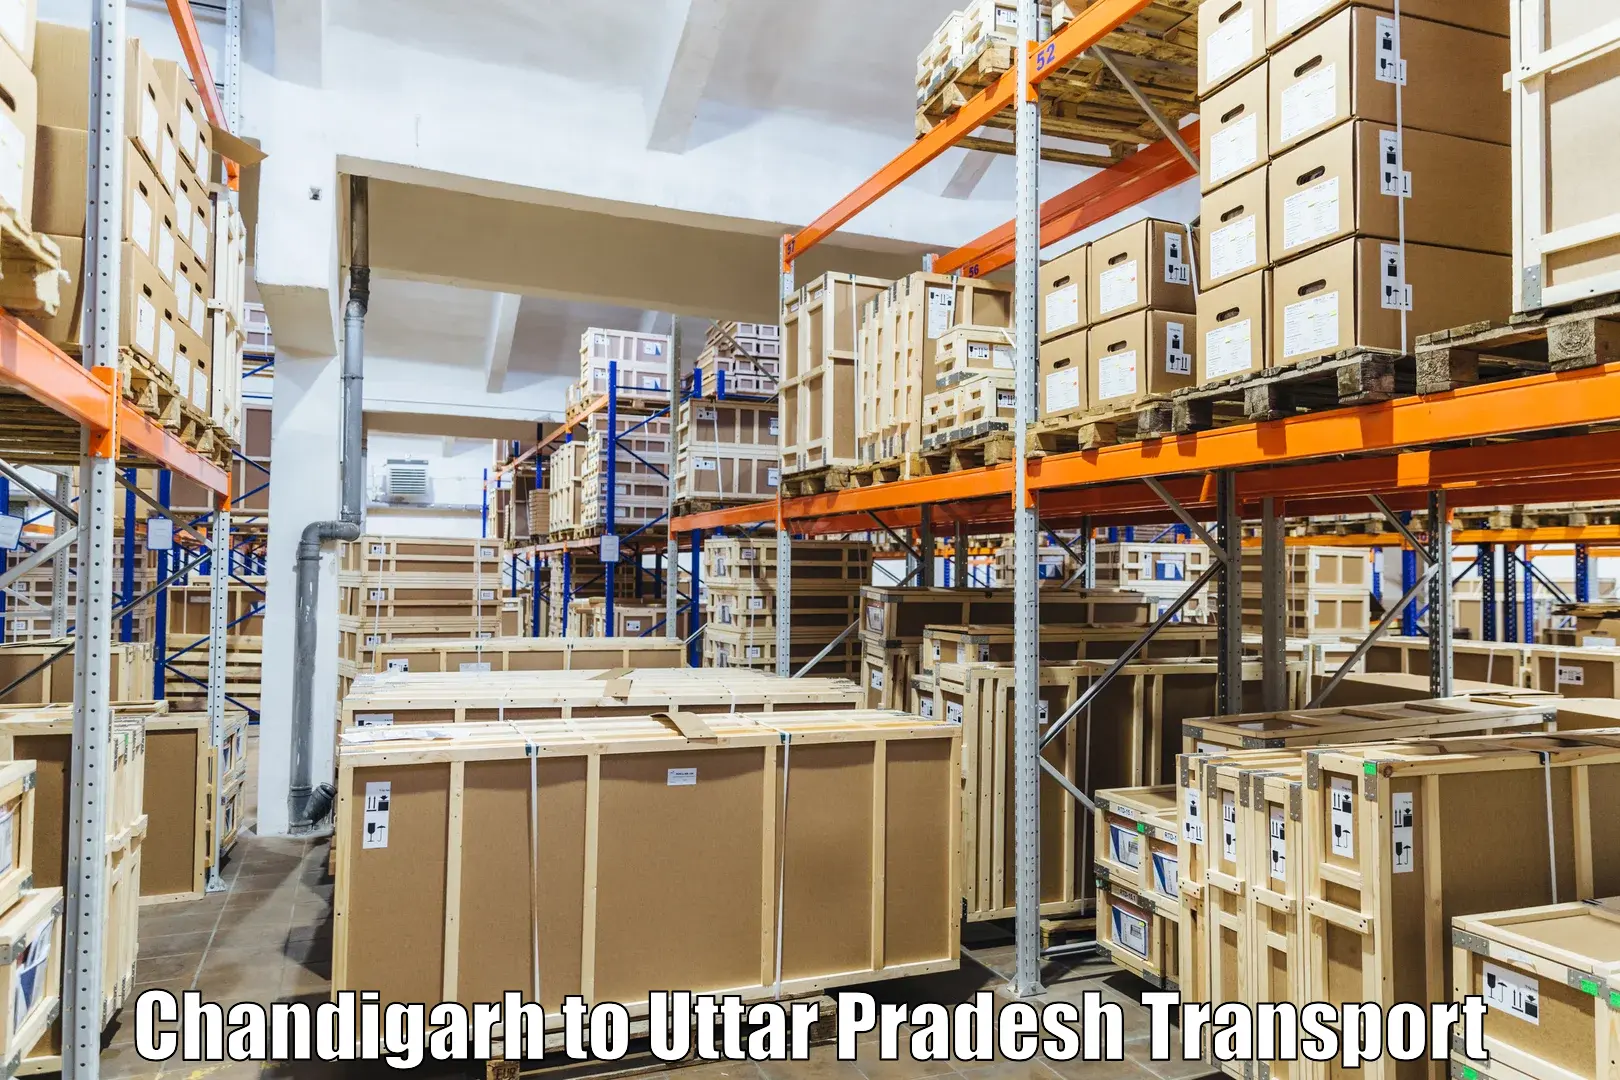 Furniture transport service Chandigarh to Hathras